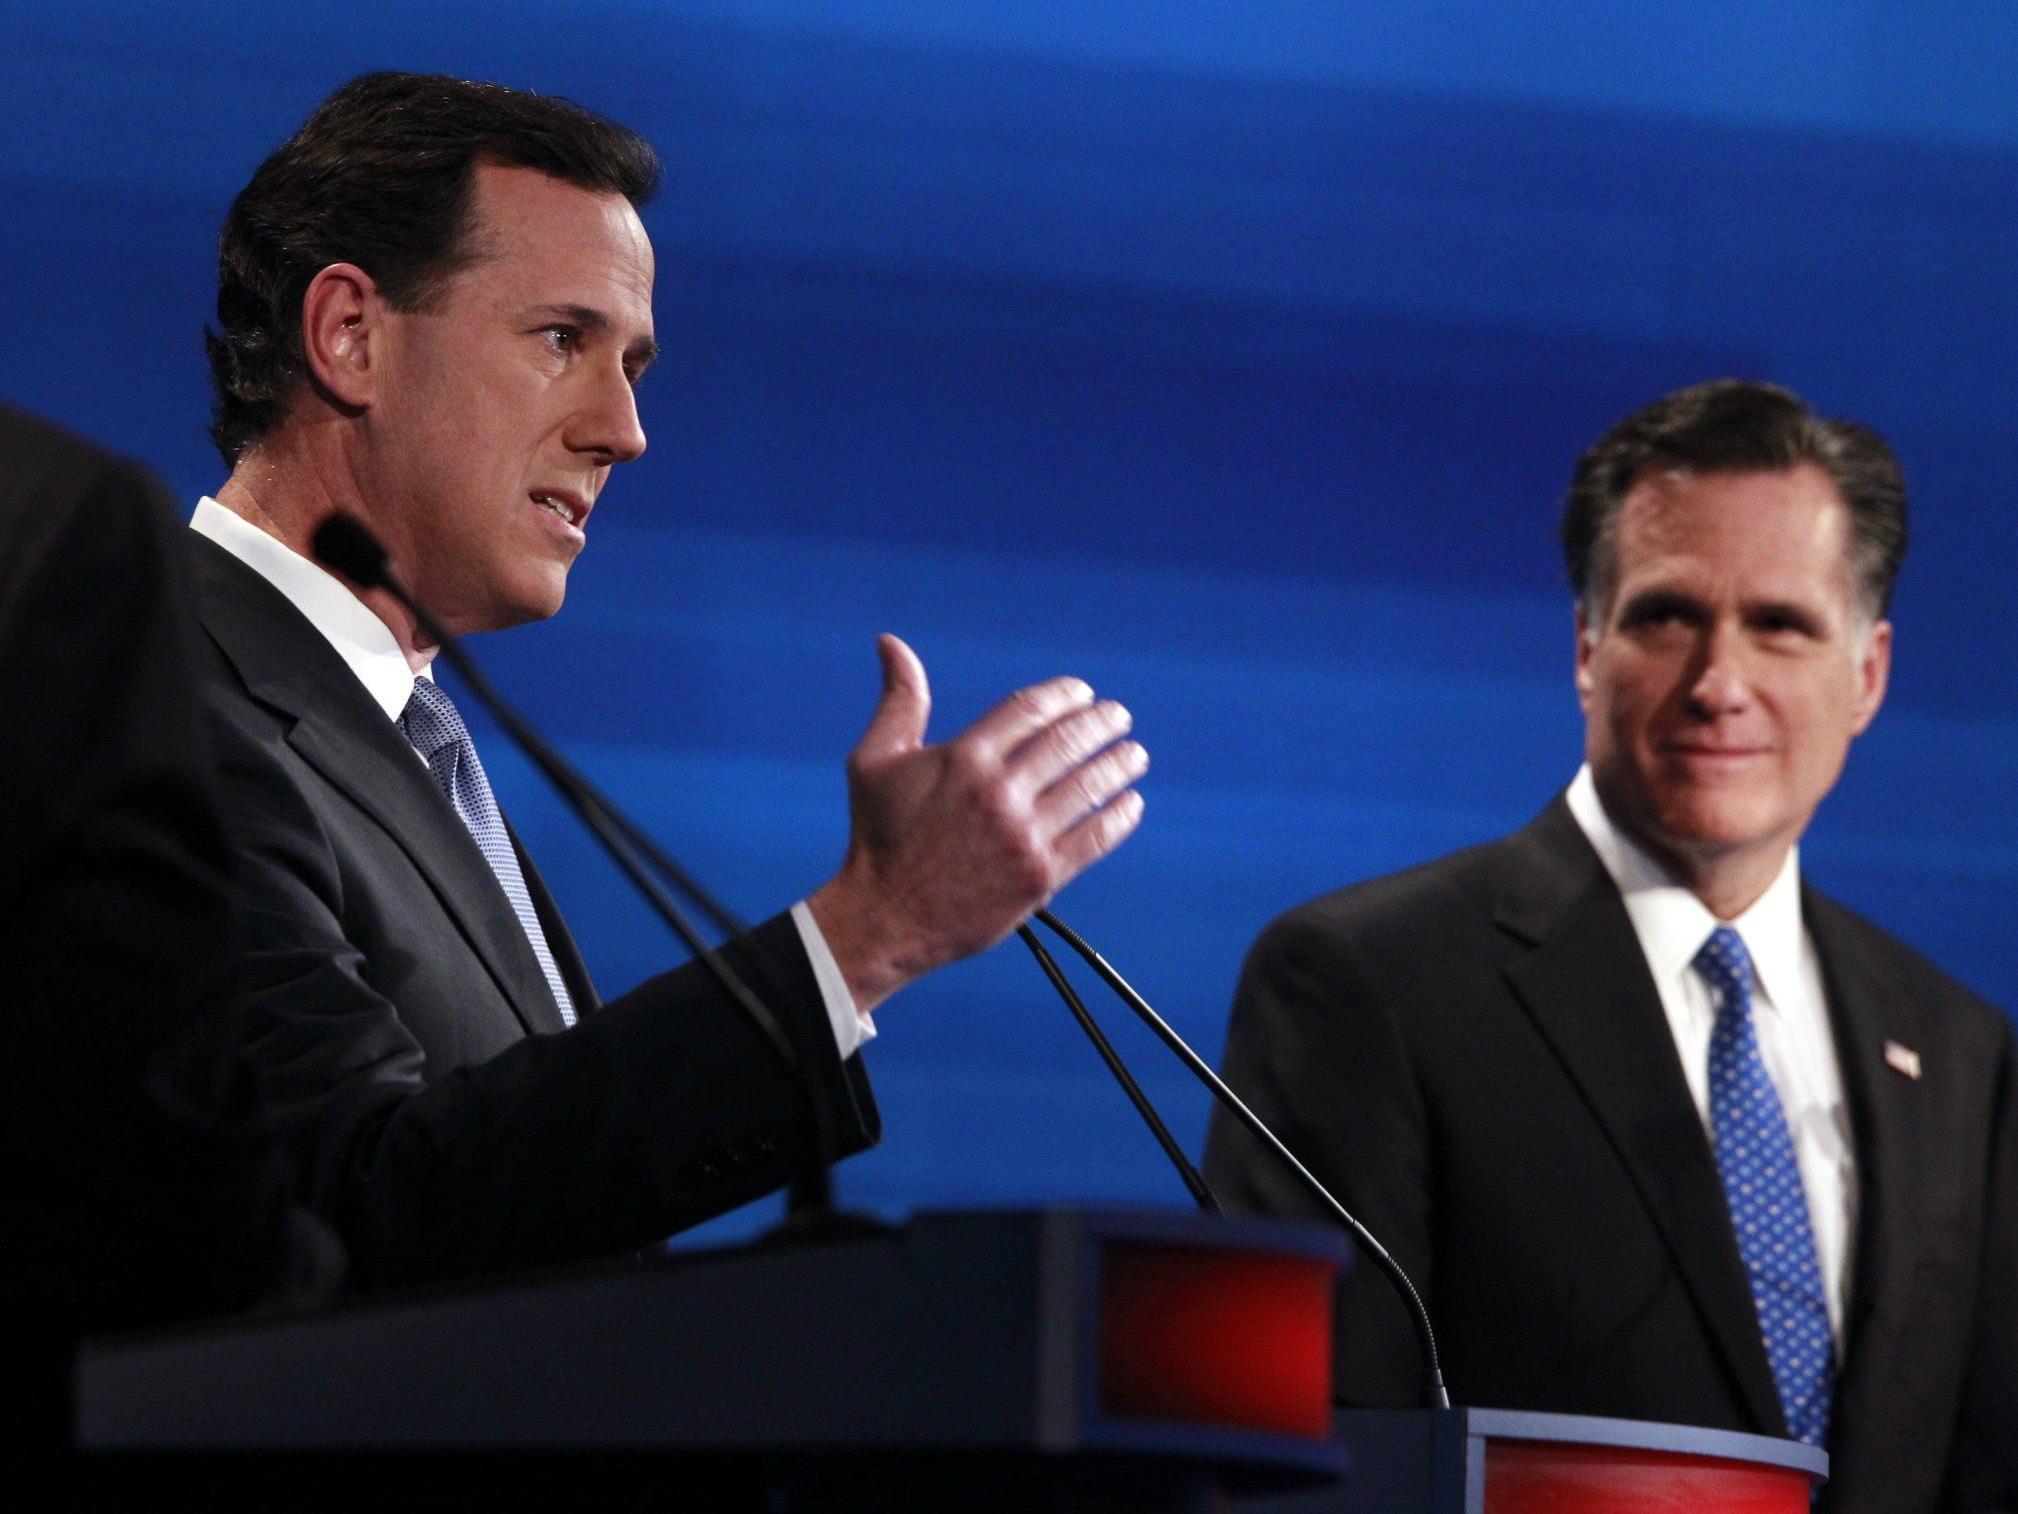 Rick Santorum vs. Mitt Romney. Letzterer obsiegte bei der ersten Vorwahl zur US-Präsidentschaft. Jetzt kommen massive Zweifel auf.